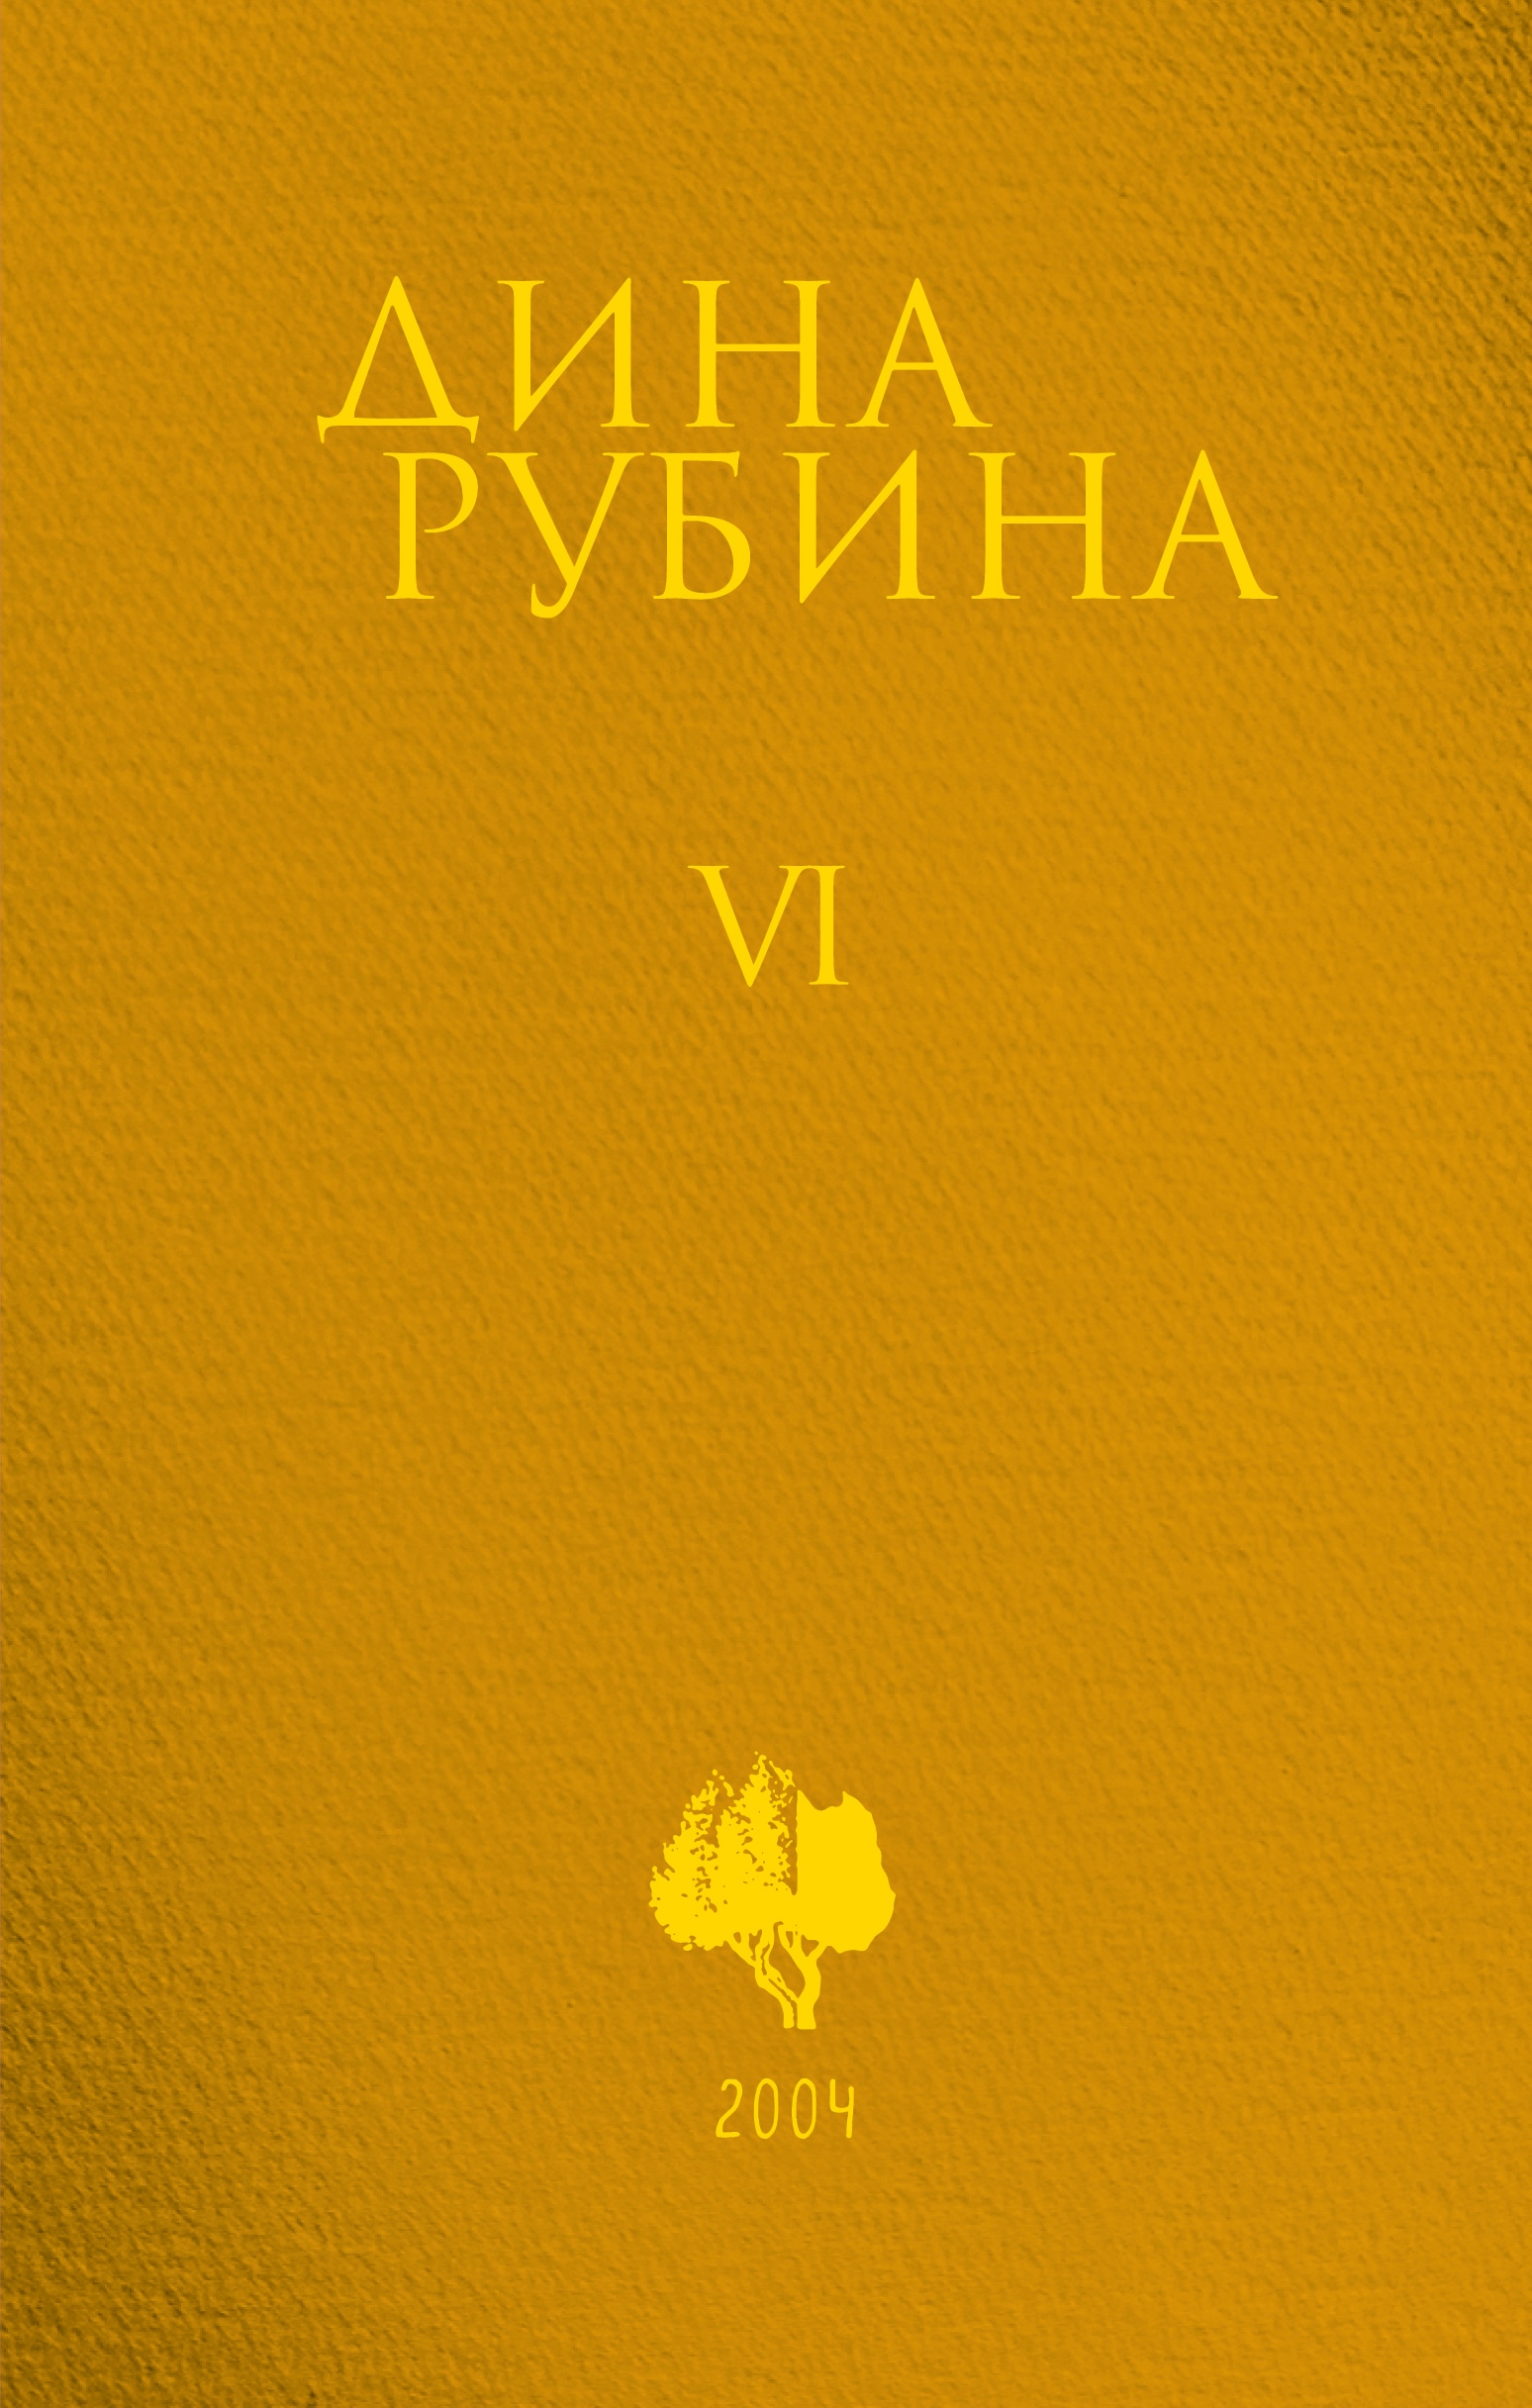 Book “Том 6” by Дина Рубина — October 22, 2021